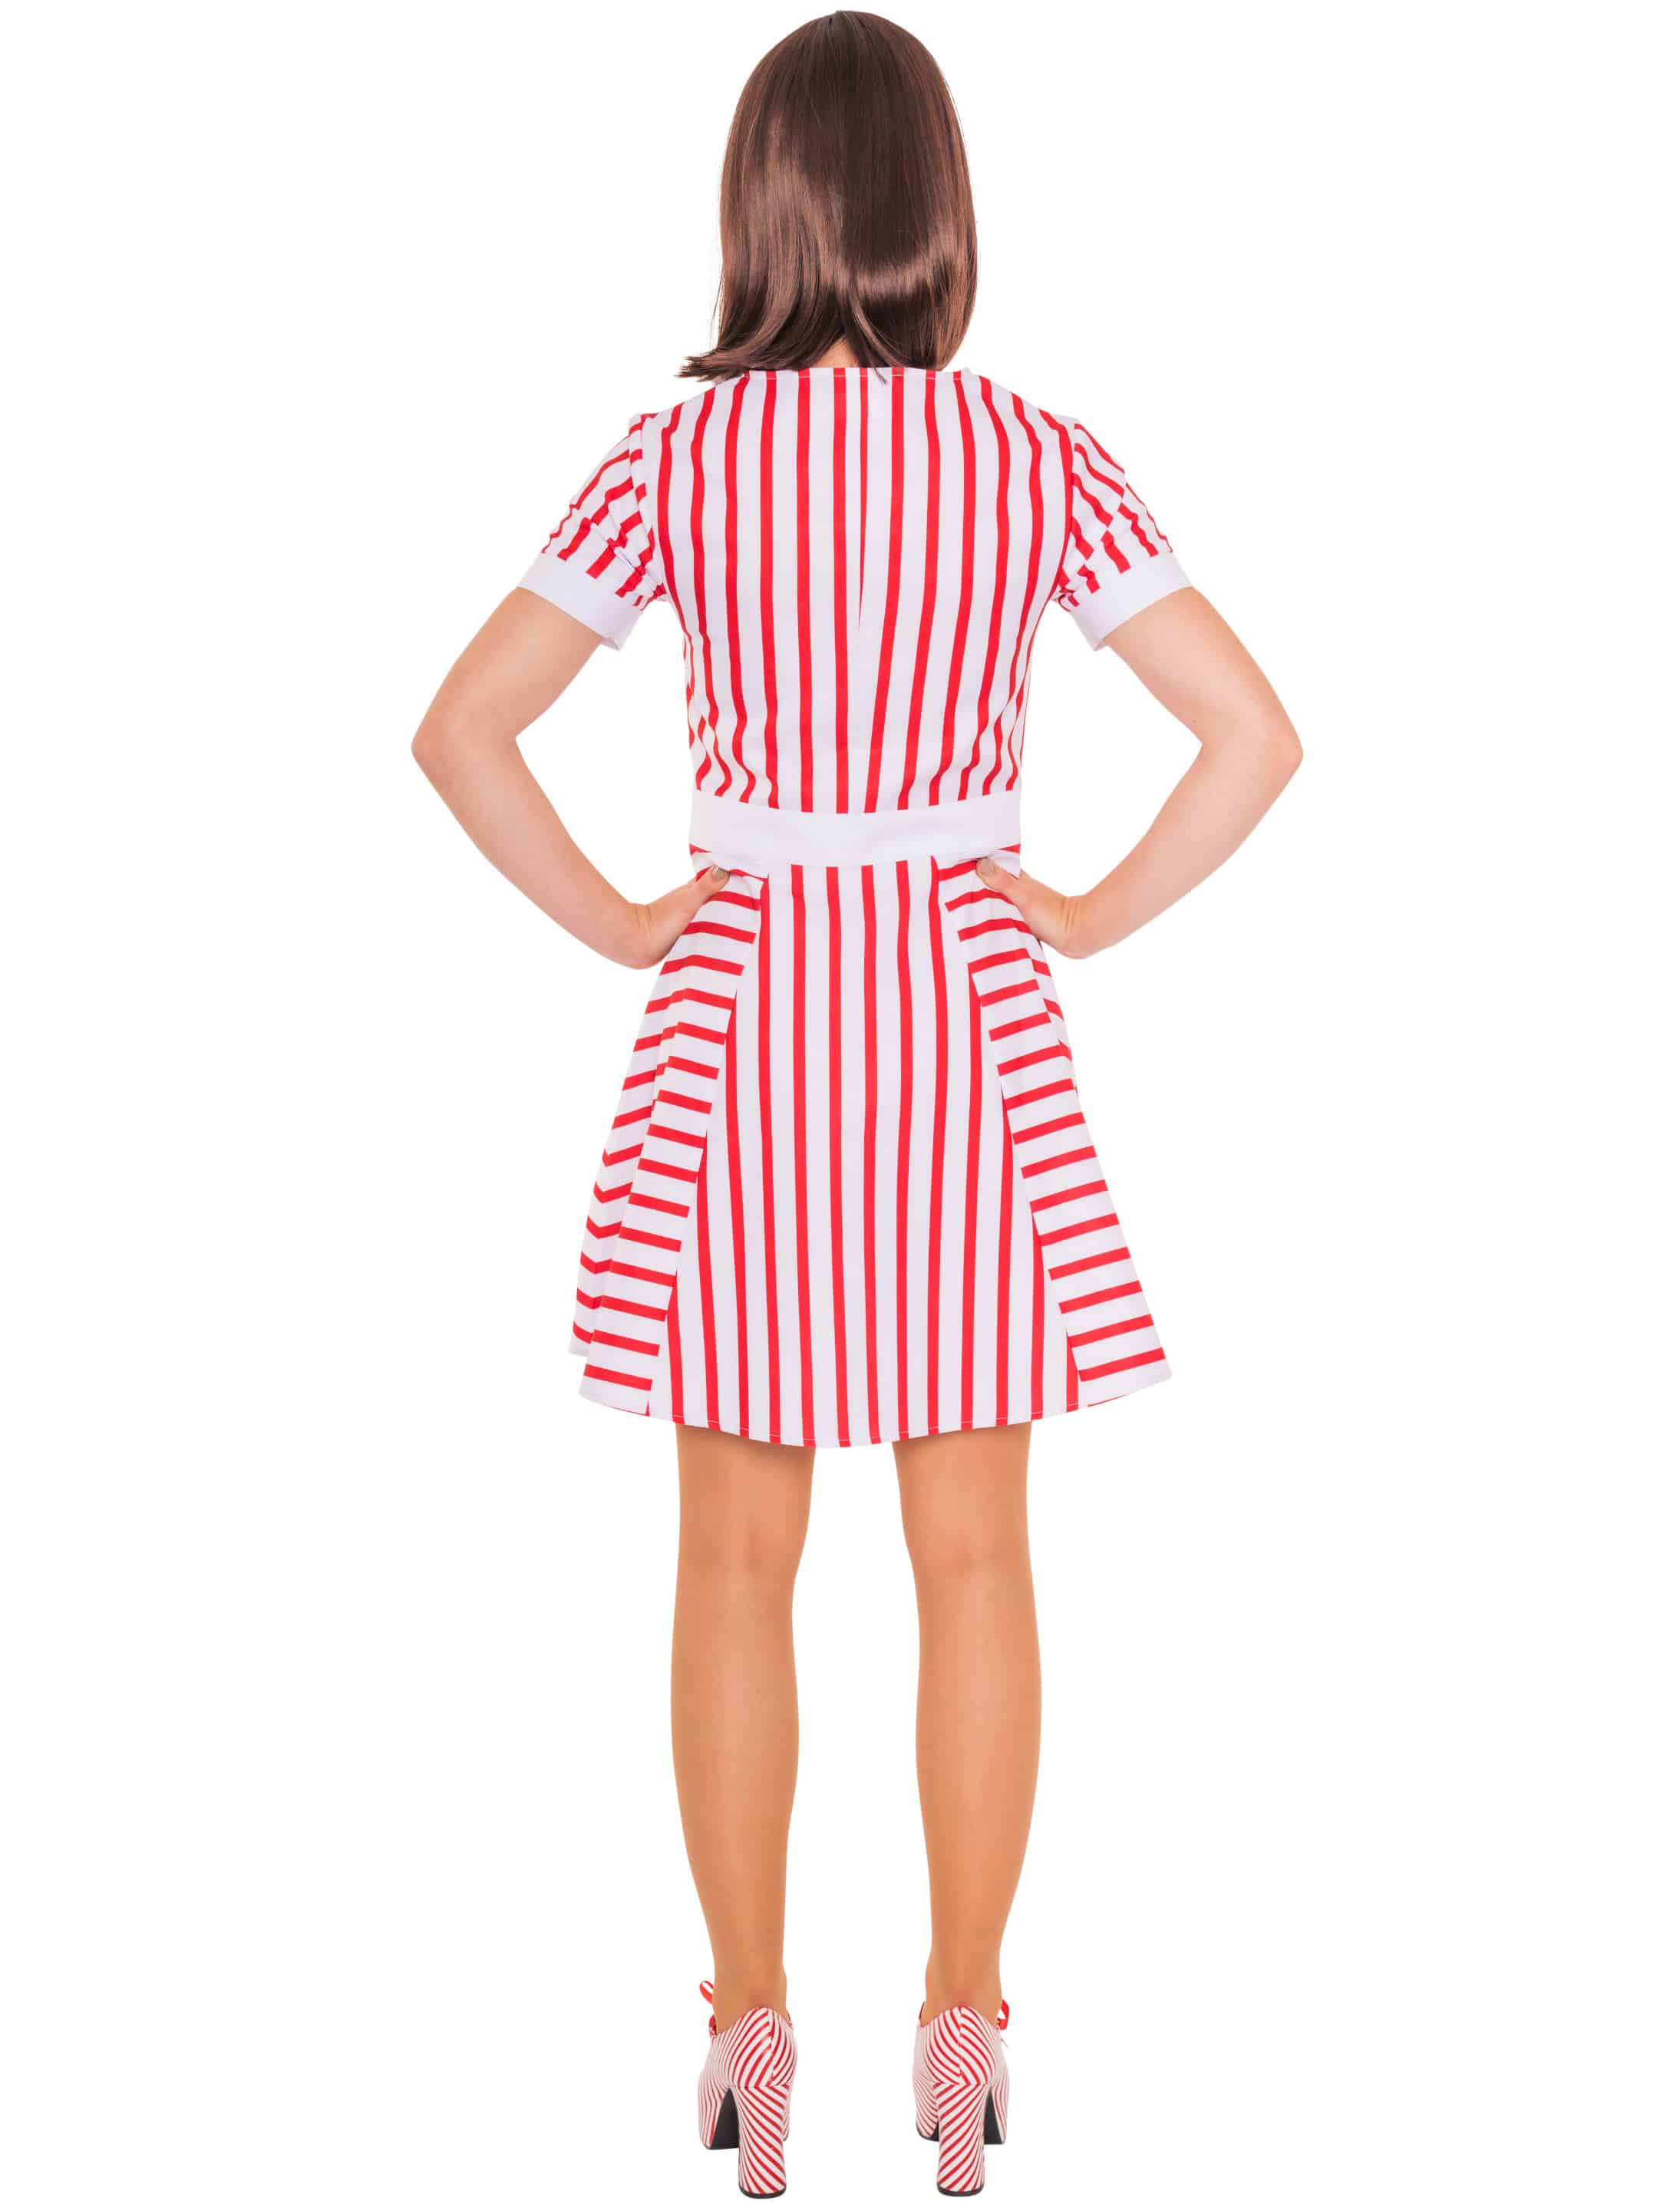 Kleid gestreift mit Kragen und Schürze rot/weiß XL